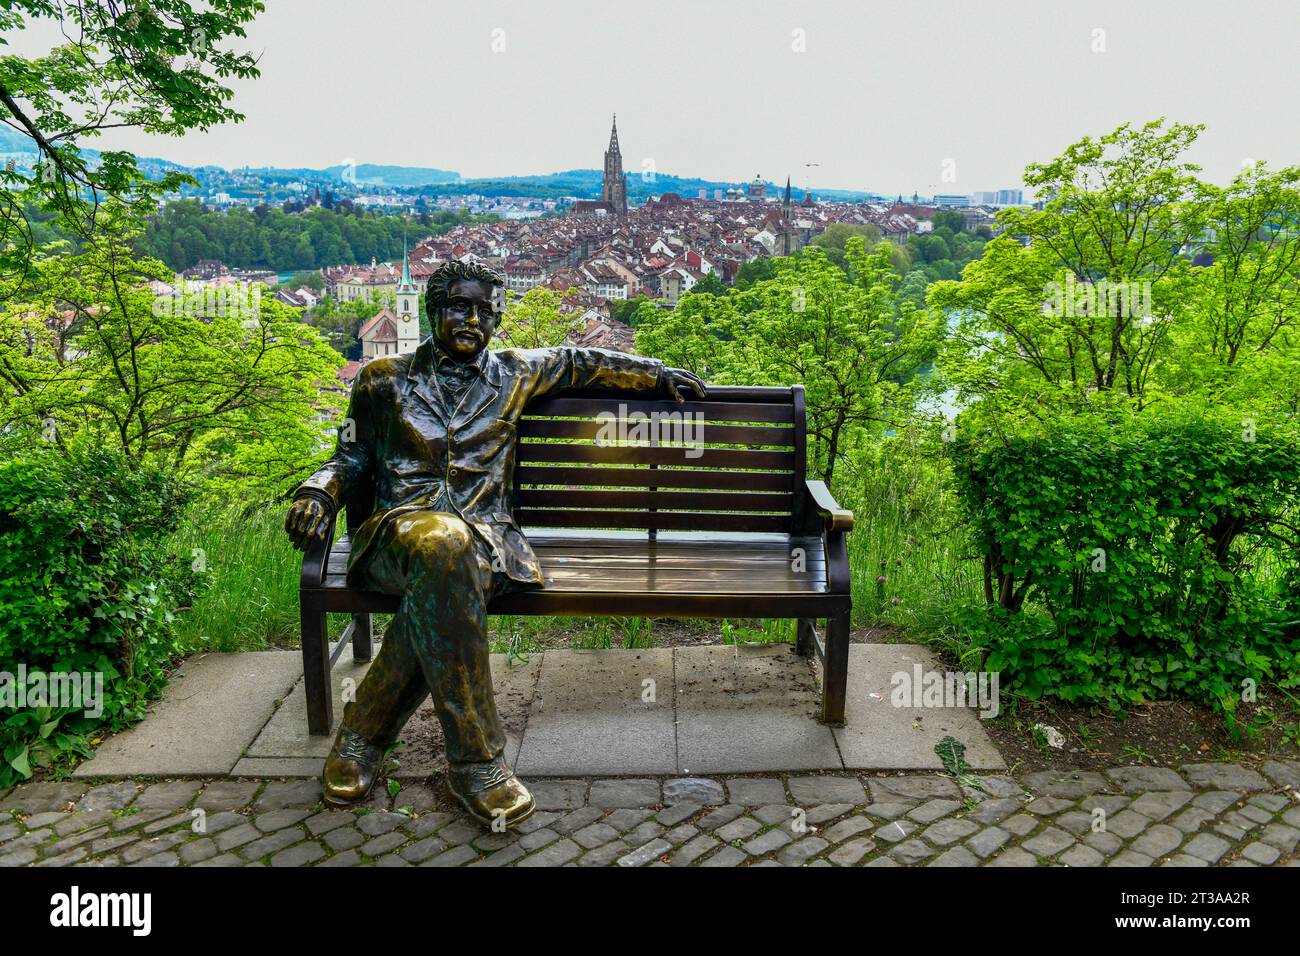 Statue of scientist “Albert Einstein” in the RosenGarten park in Bern ,Switzerland Stock Photo